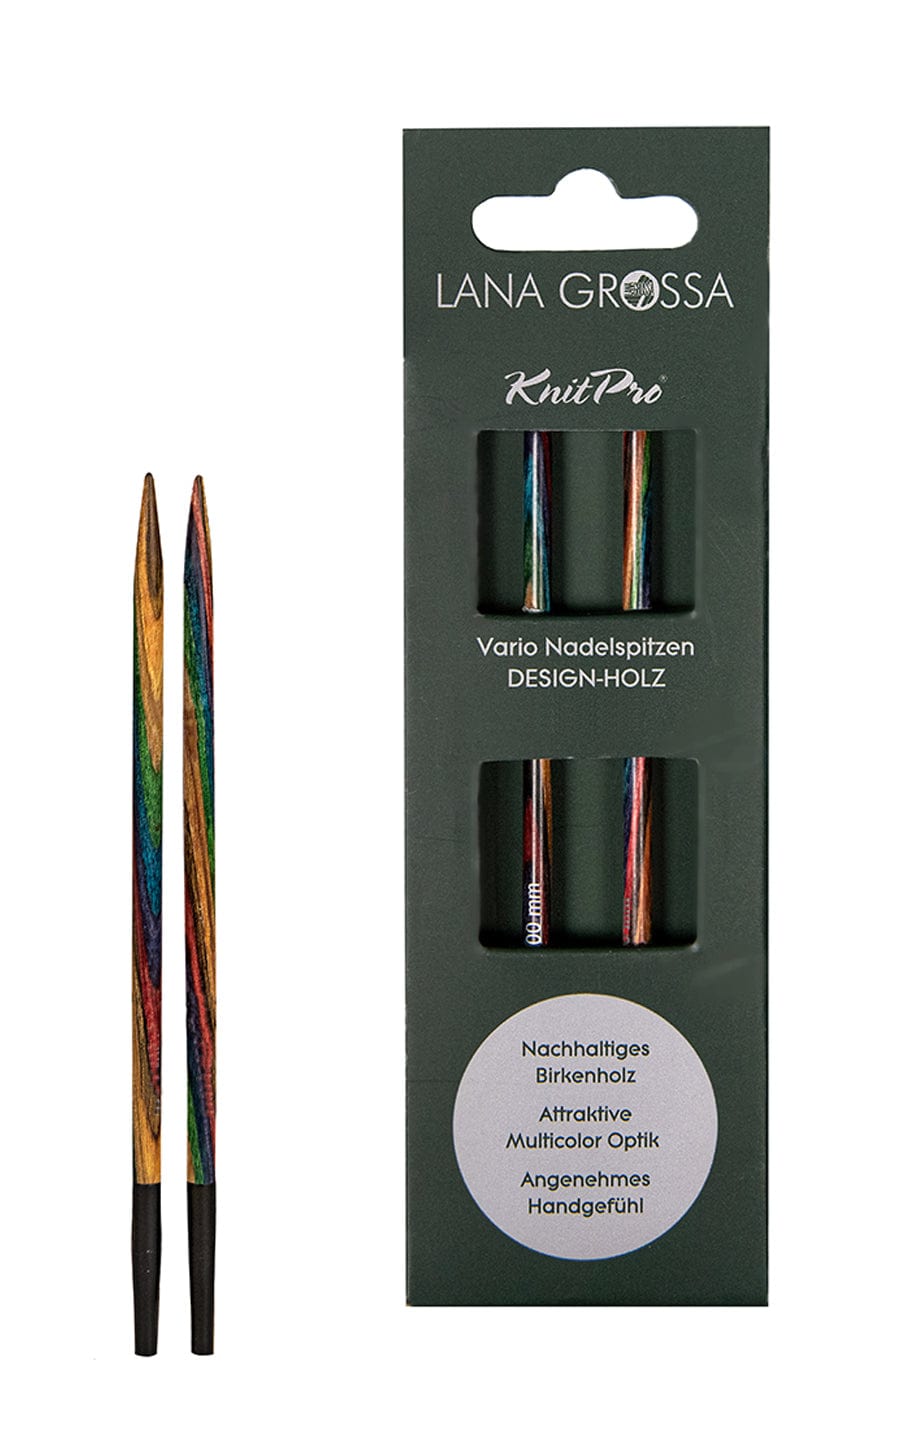 Kurze 5,5 mm Nadelspitze Vario aus Holz - neue Verpackung von LANA GROSSA jetzt online kaufen bei OONIQUE